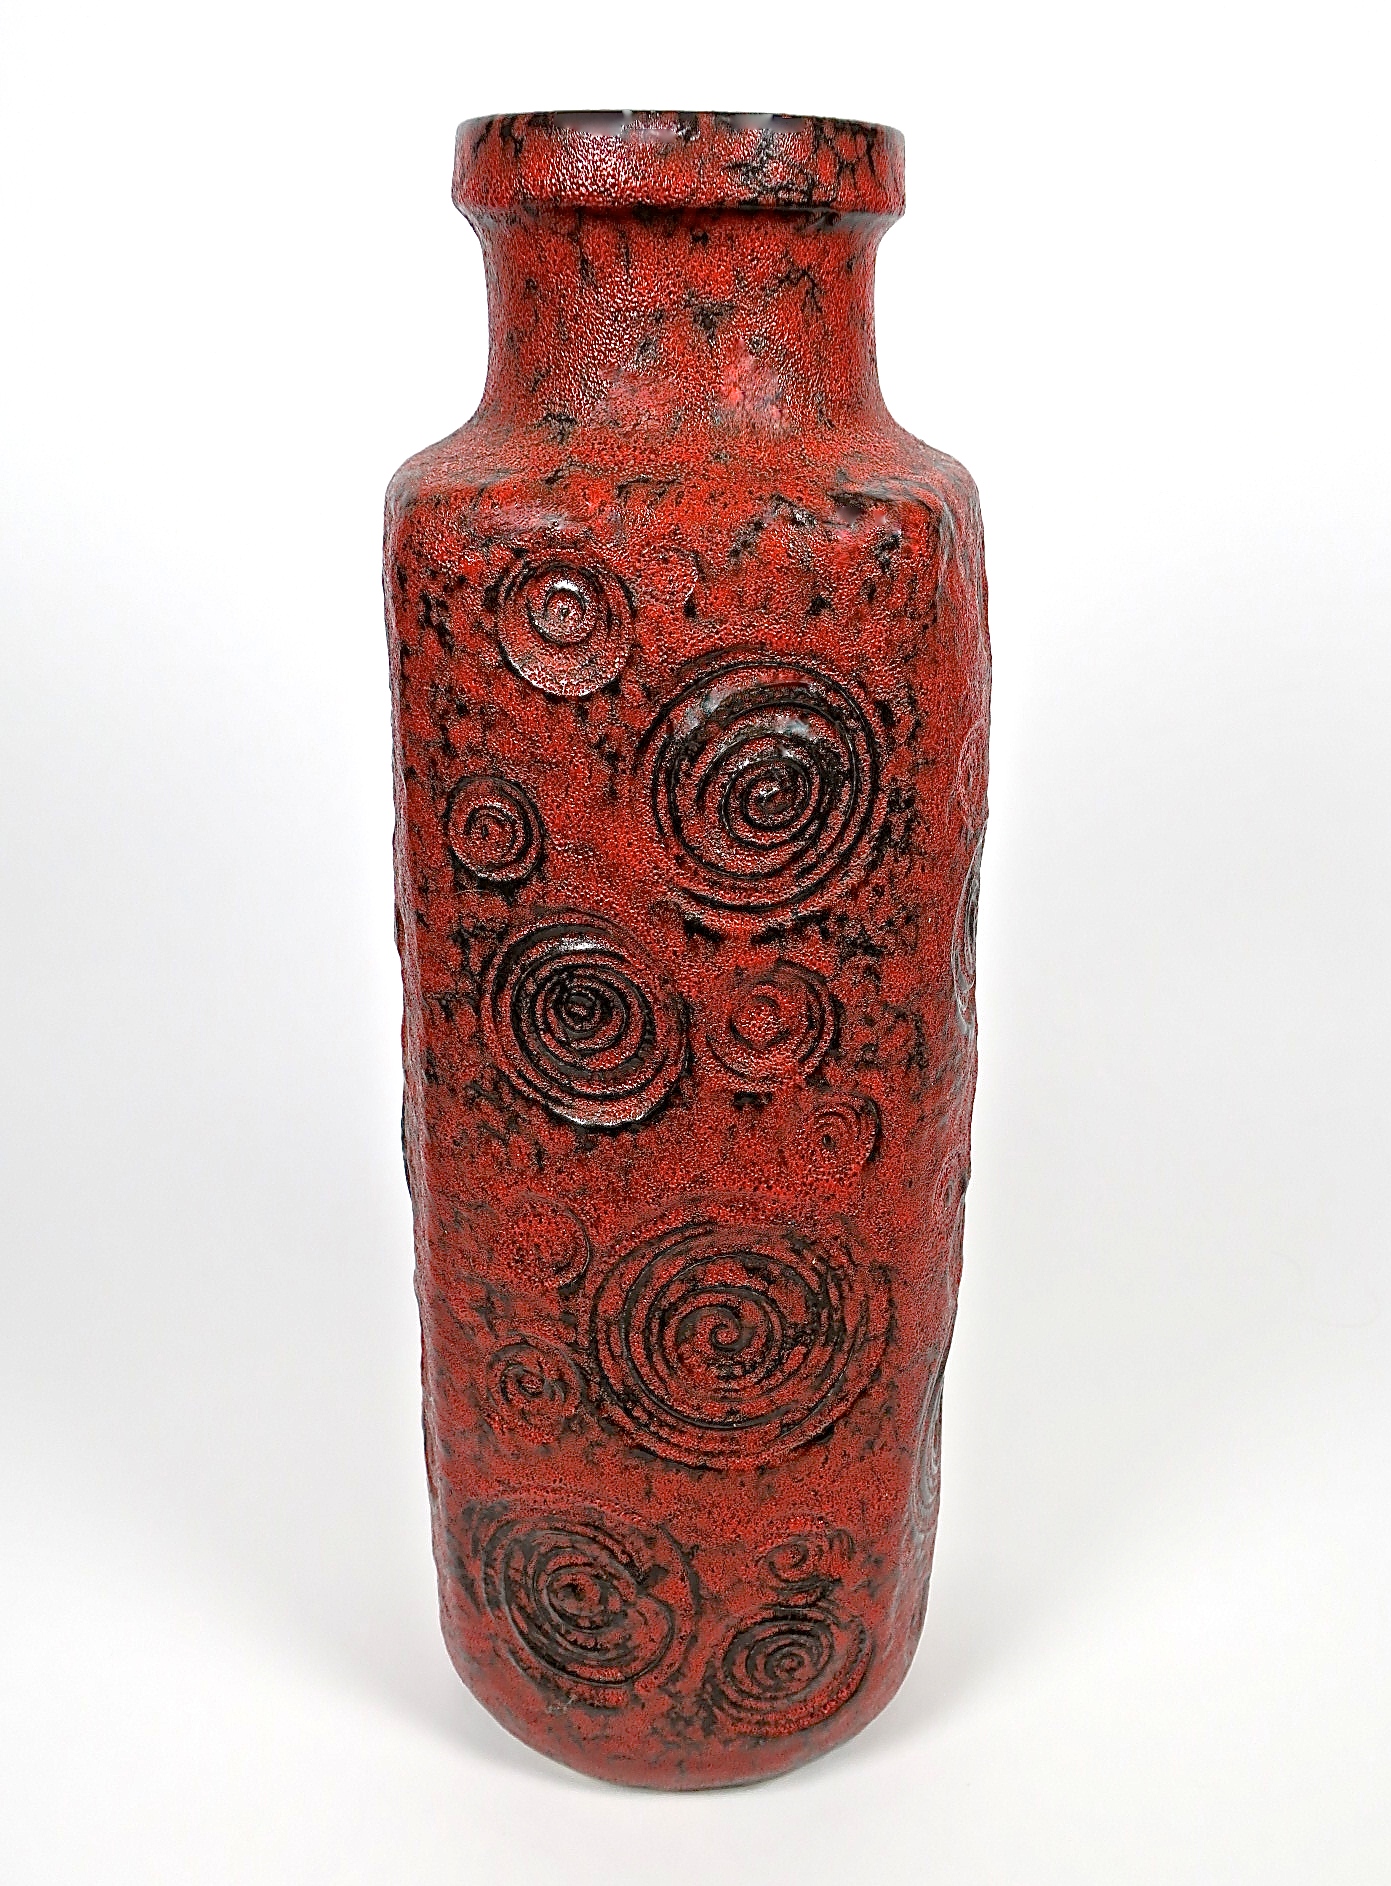 helica spirale céramique keramik vase bodenvase floorvase midcentury interior designer inneneinrichtung kaufmuseum geschenke